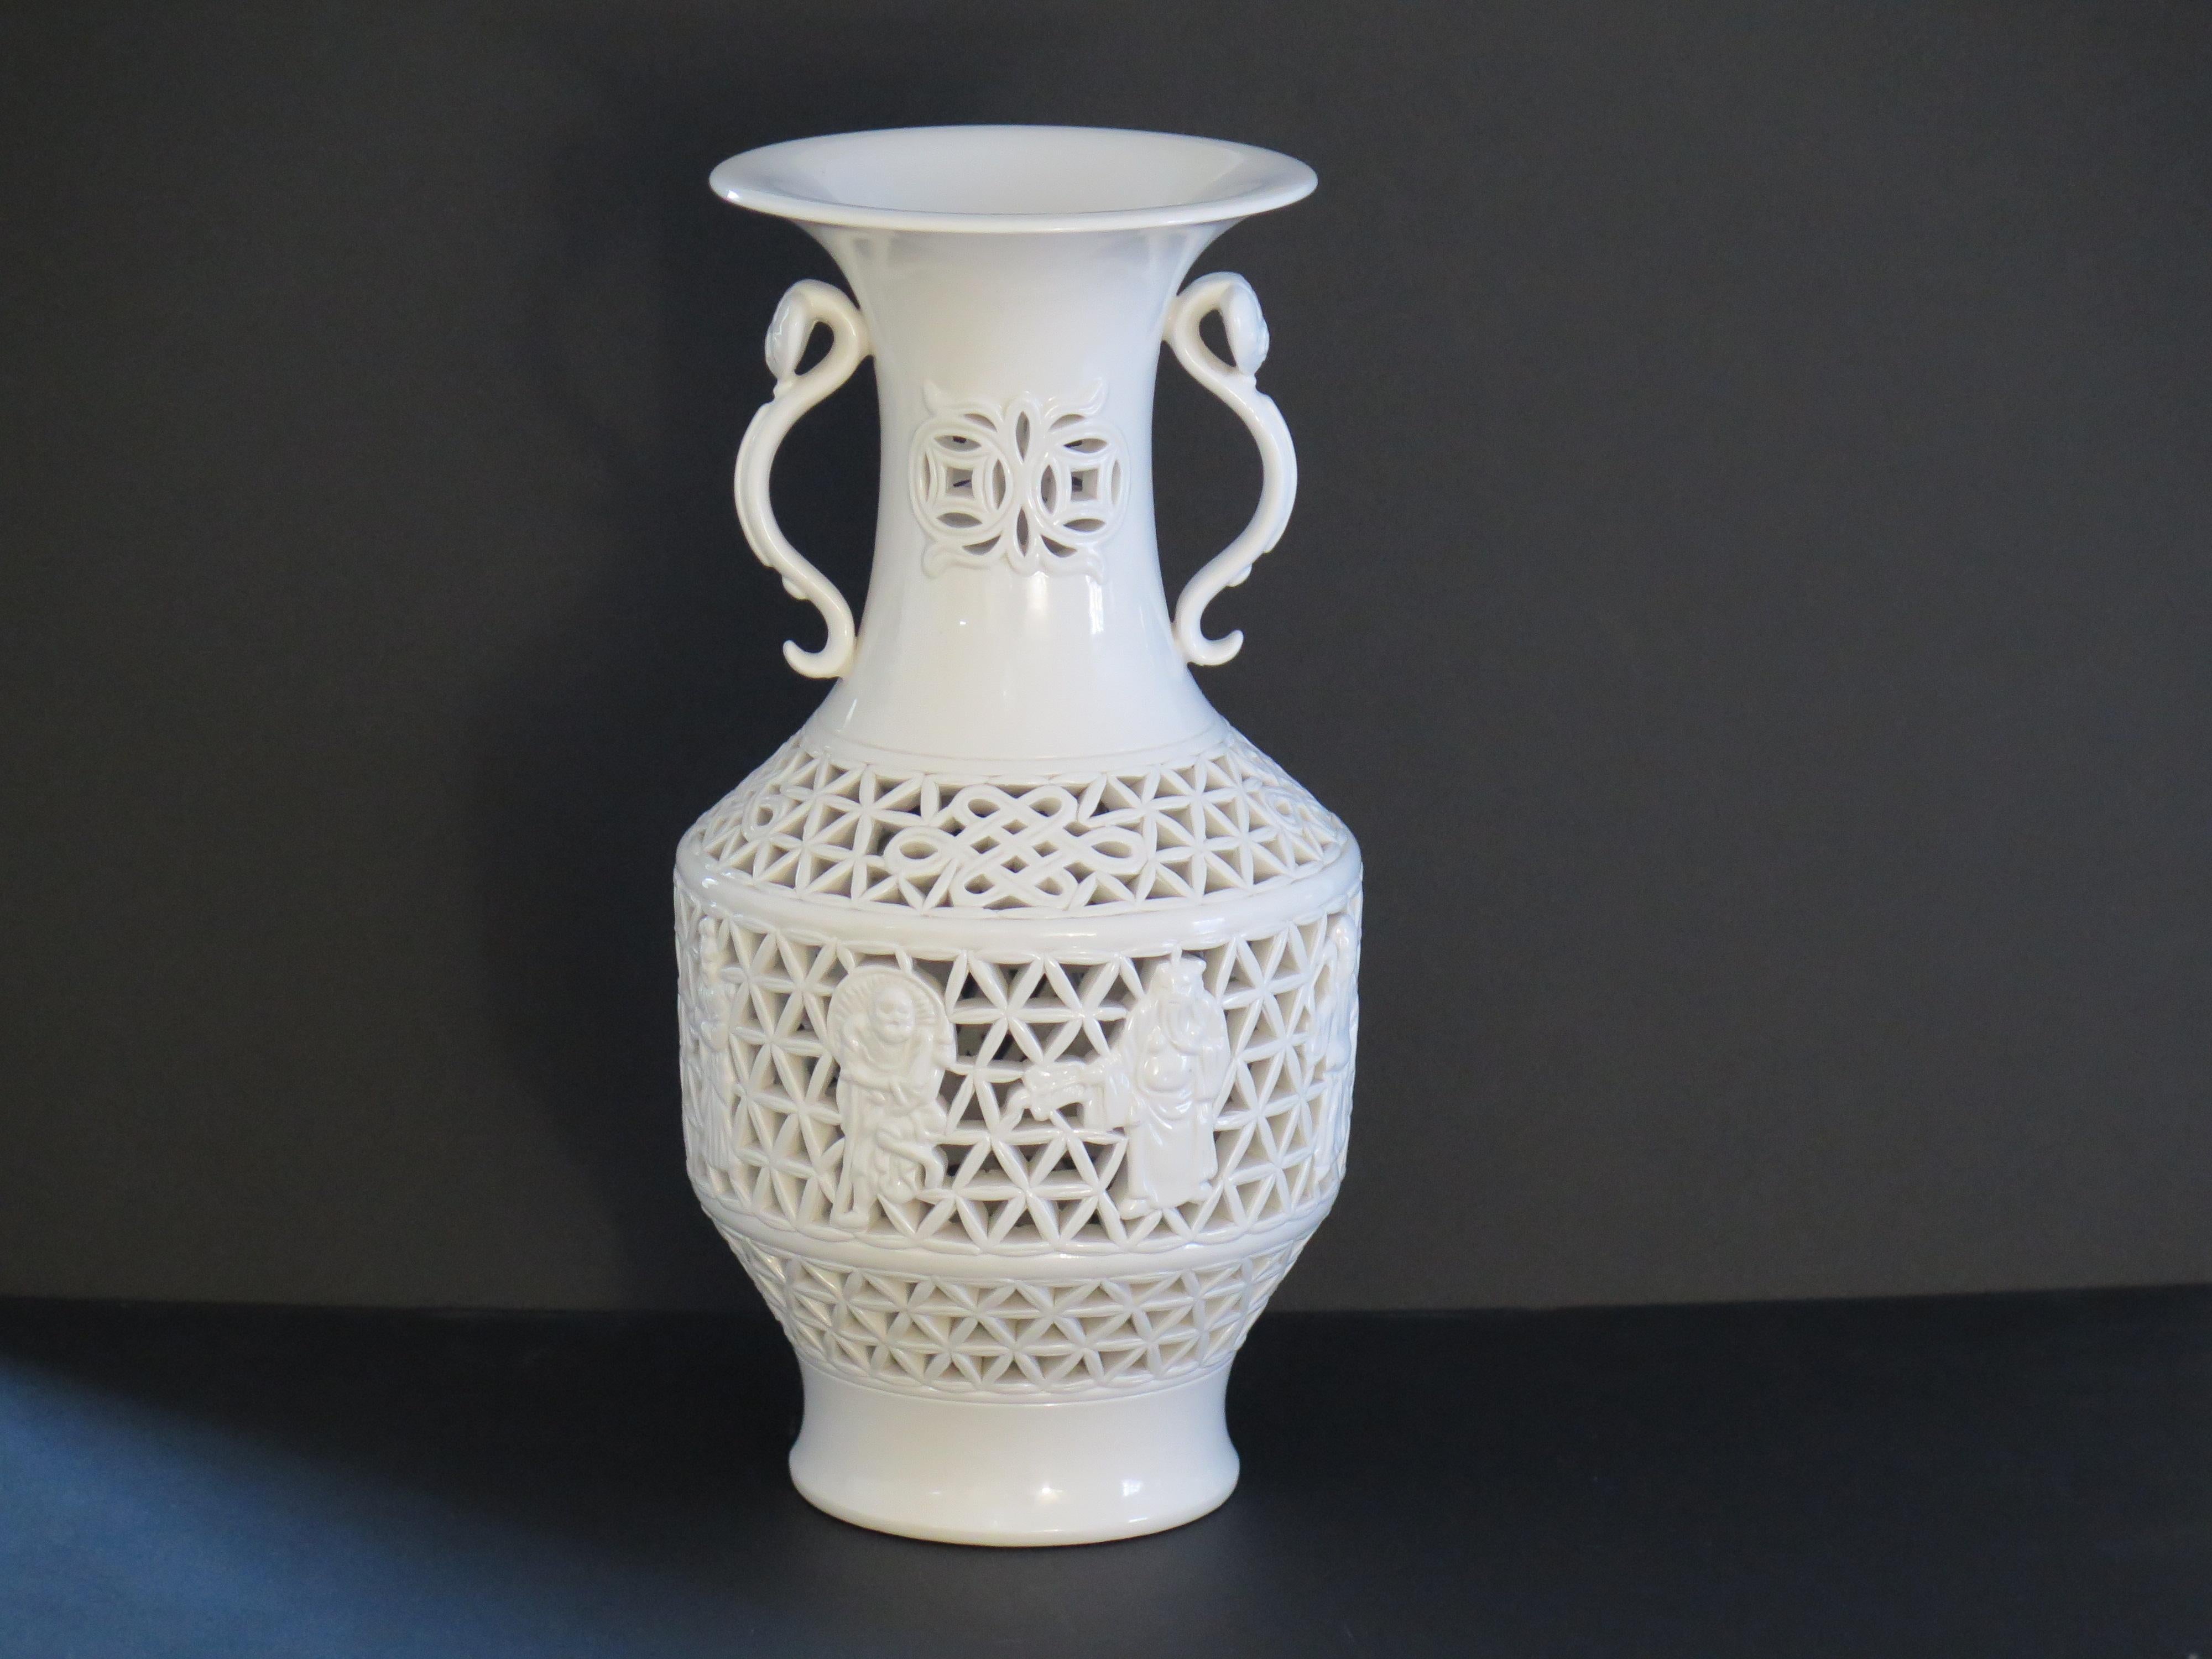 Dies ist eine sehr feine Qualität chinesischen Blanc-De-Chine Vase mit einem feinen netzartigen Dekor, aus der Mitte des 20. Jahrhunderts, ca. 1940.
 
Die Vase ist sehr gut von Hand getöpfert, hat einen Becherkörper und einen ausgestellten Rand mit